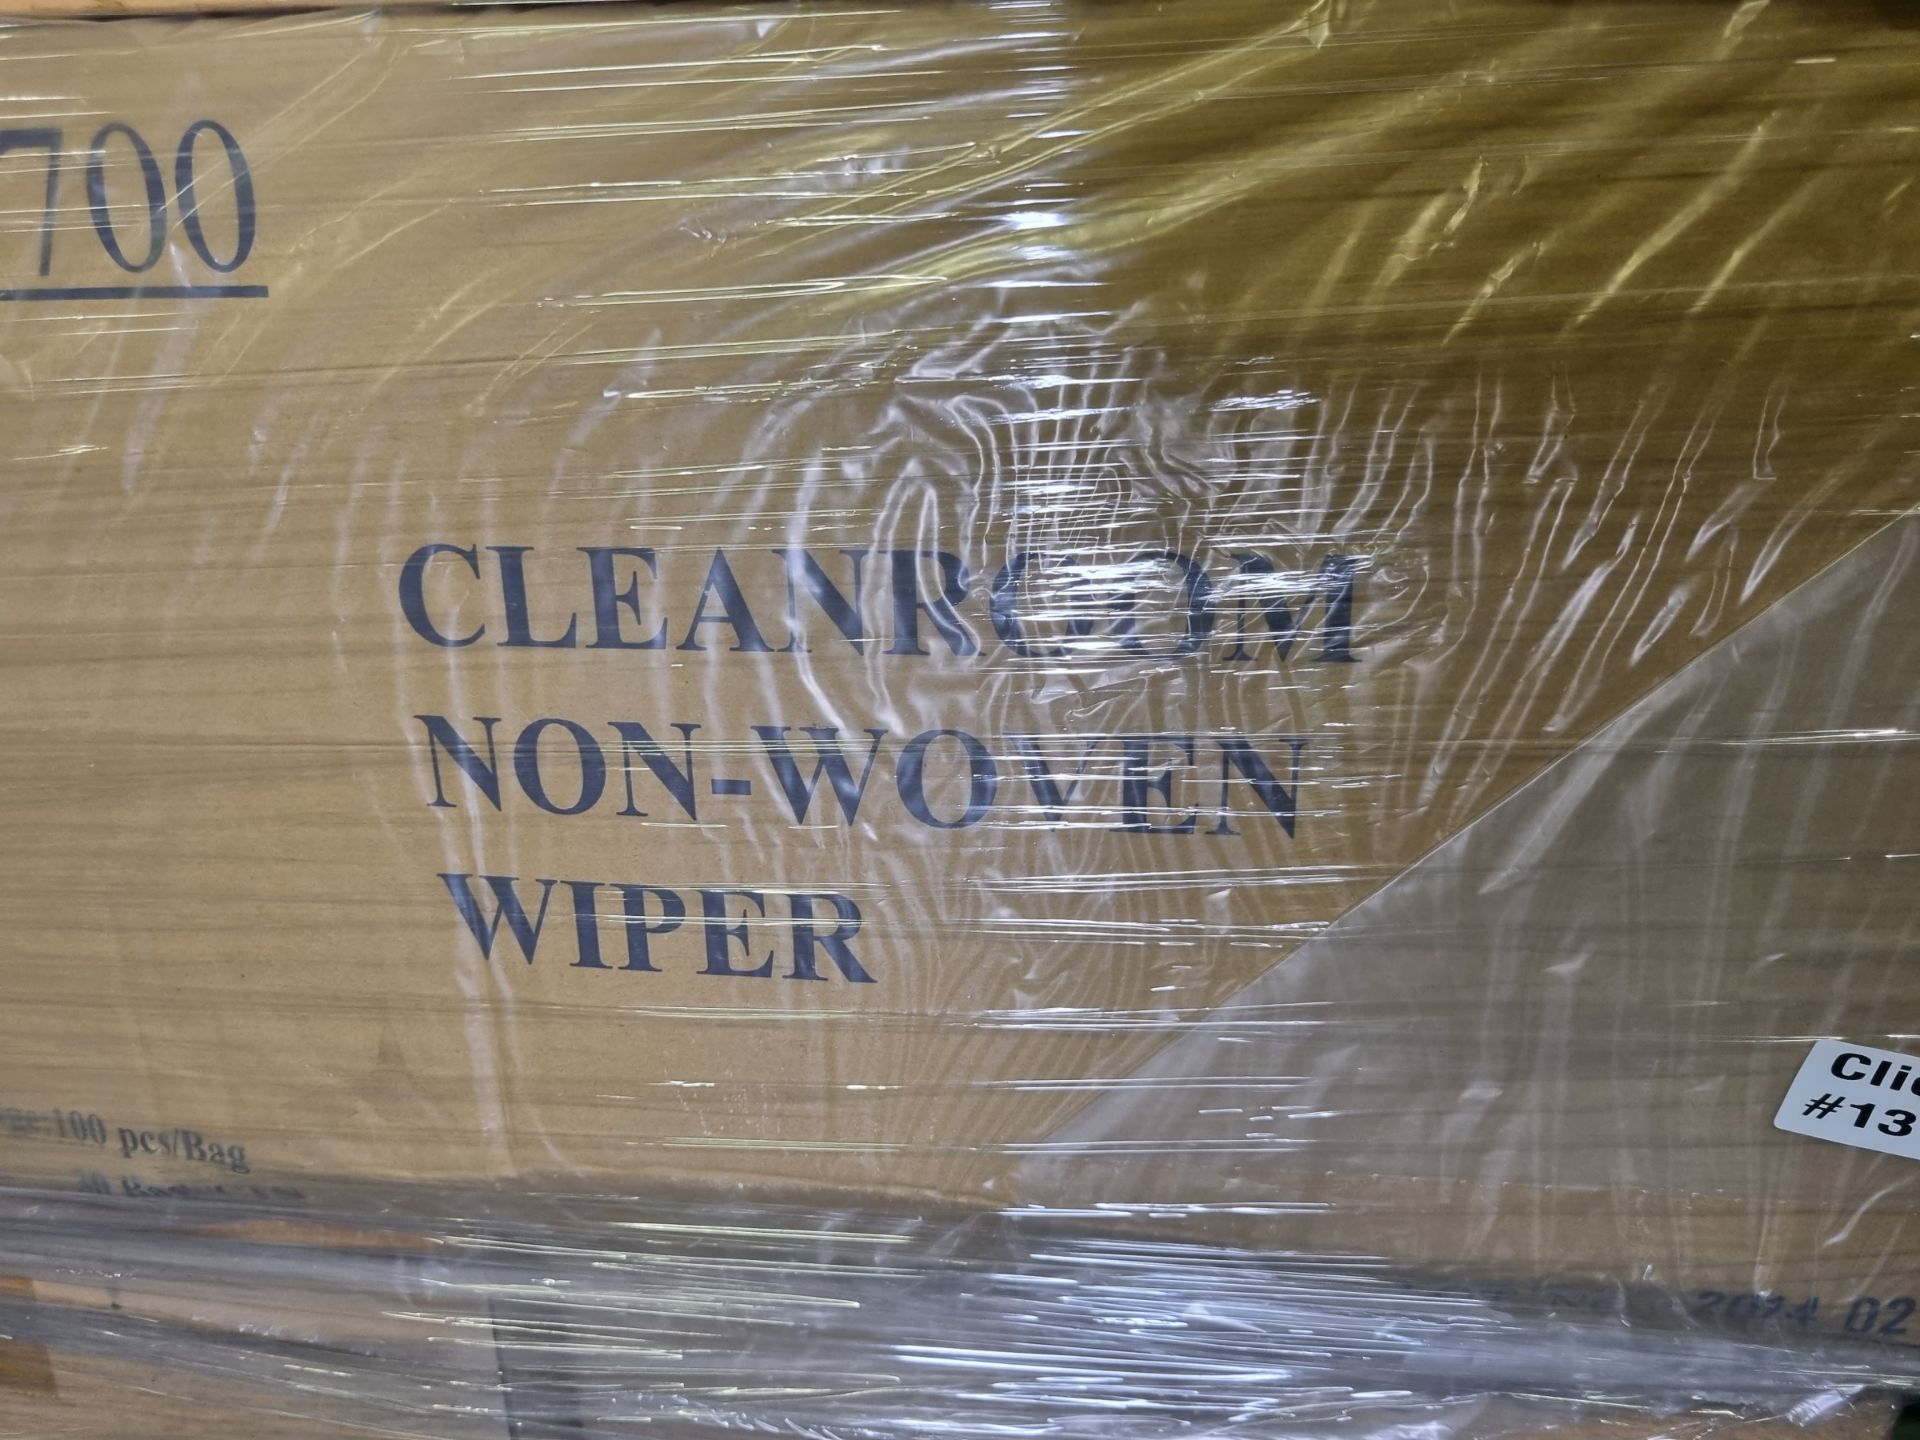 Cleanroom Non-woven wiper - 100 per bag - 30 bags per box - 20 boxes - Image 3 of 3